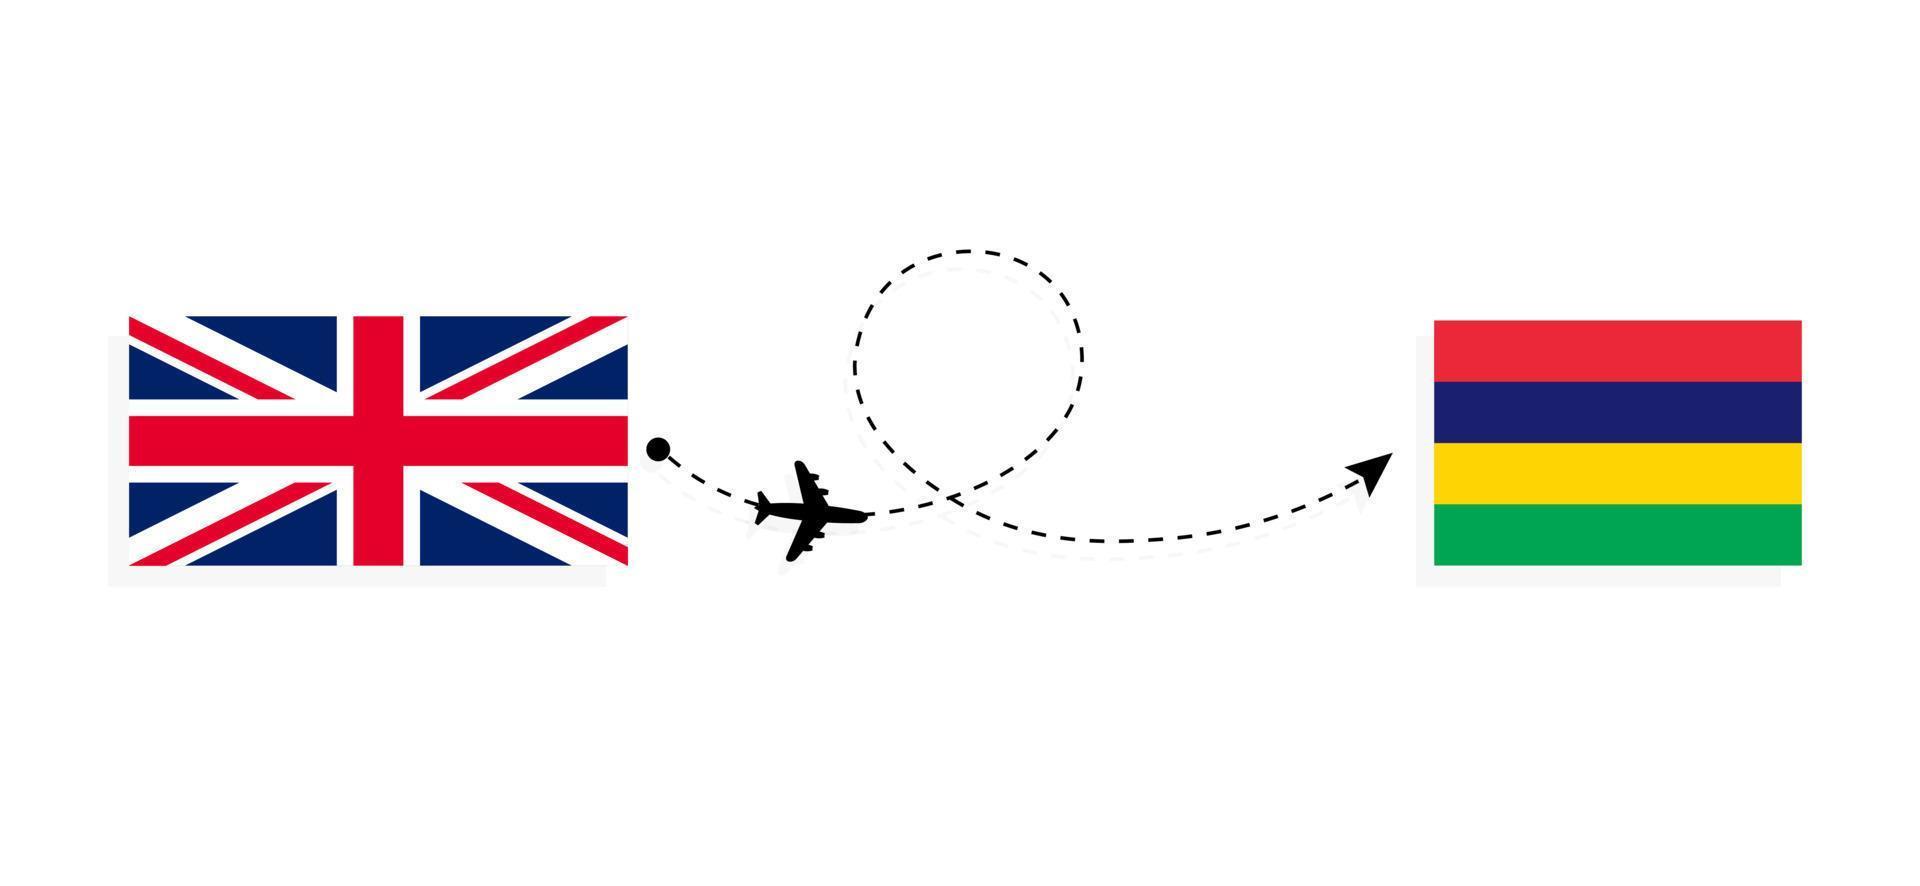 flyg och resor från Storbritannien till Mauritius med passagerarflygplan vektor